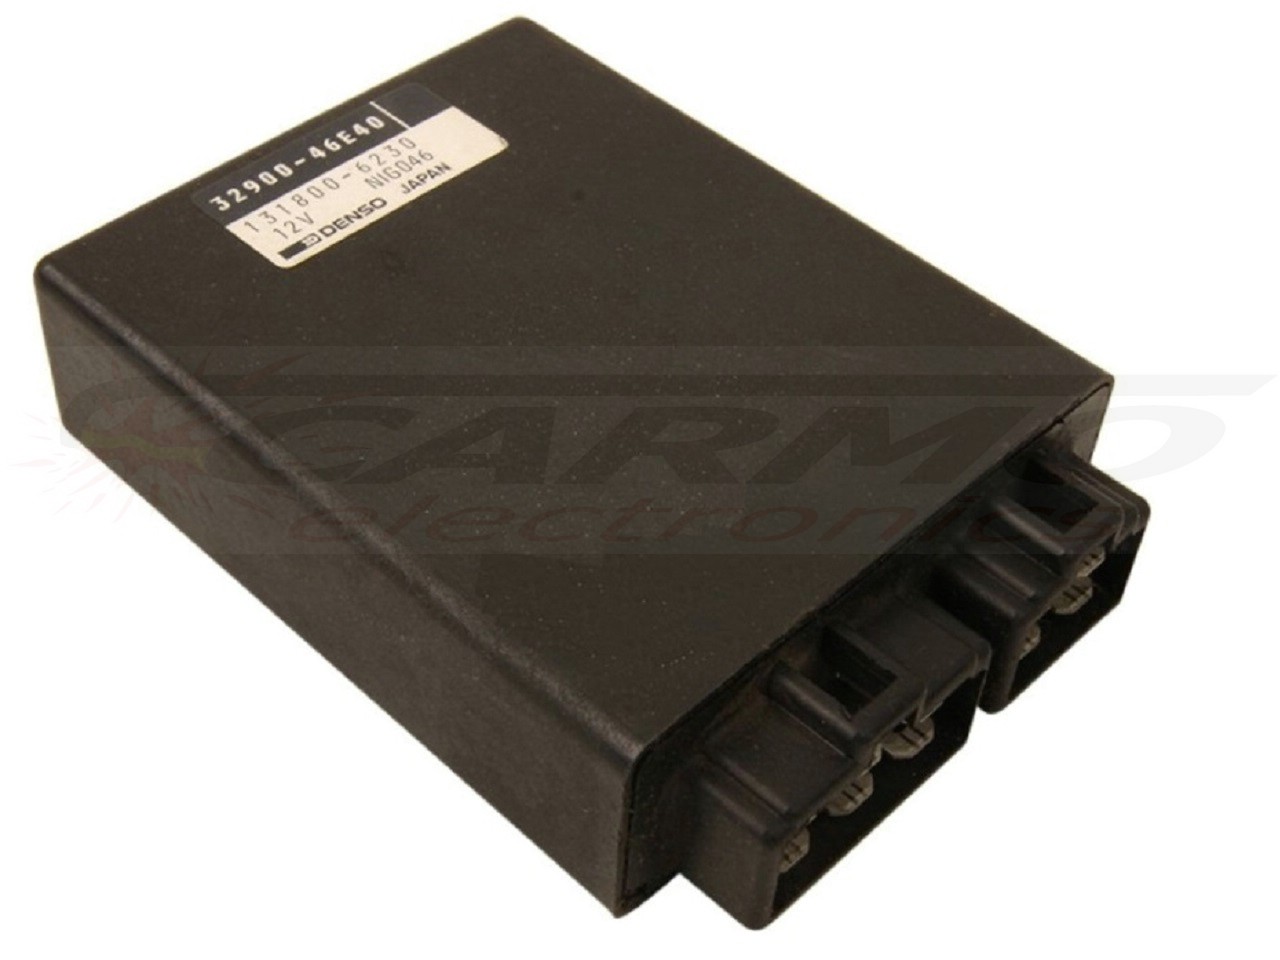 GSXR1100 GSX-R1100 igniter ignition module CDI TCI Box (32900-46E)